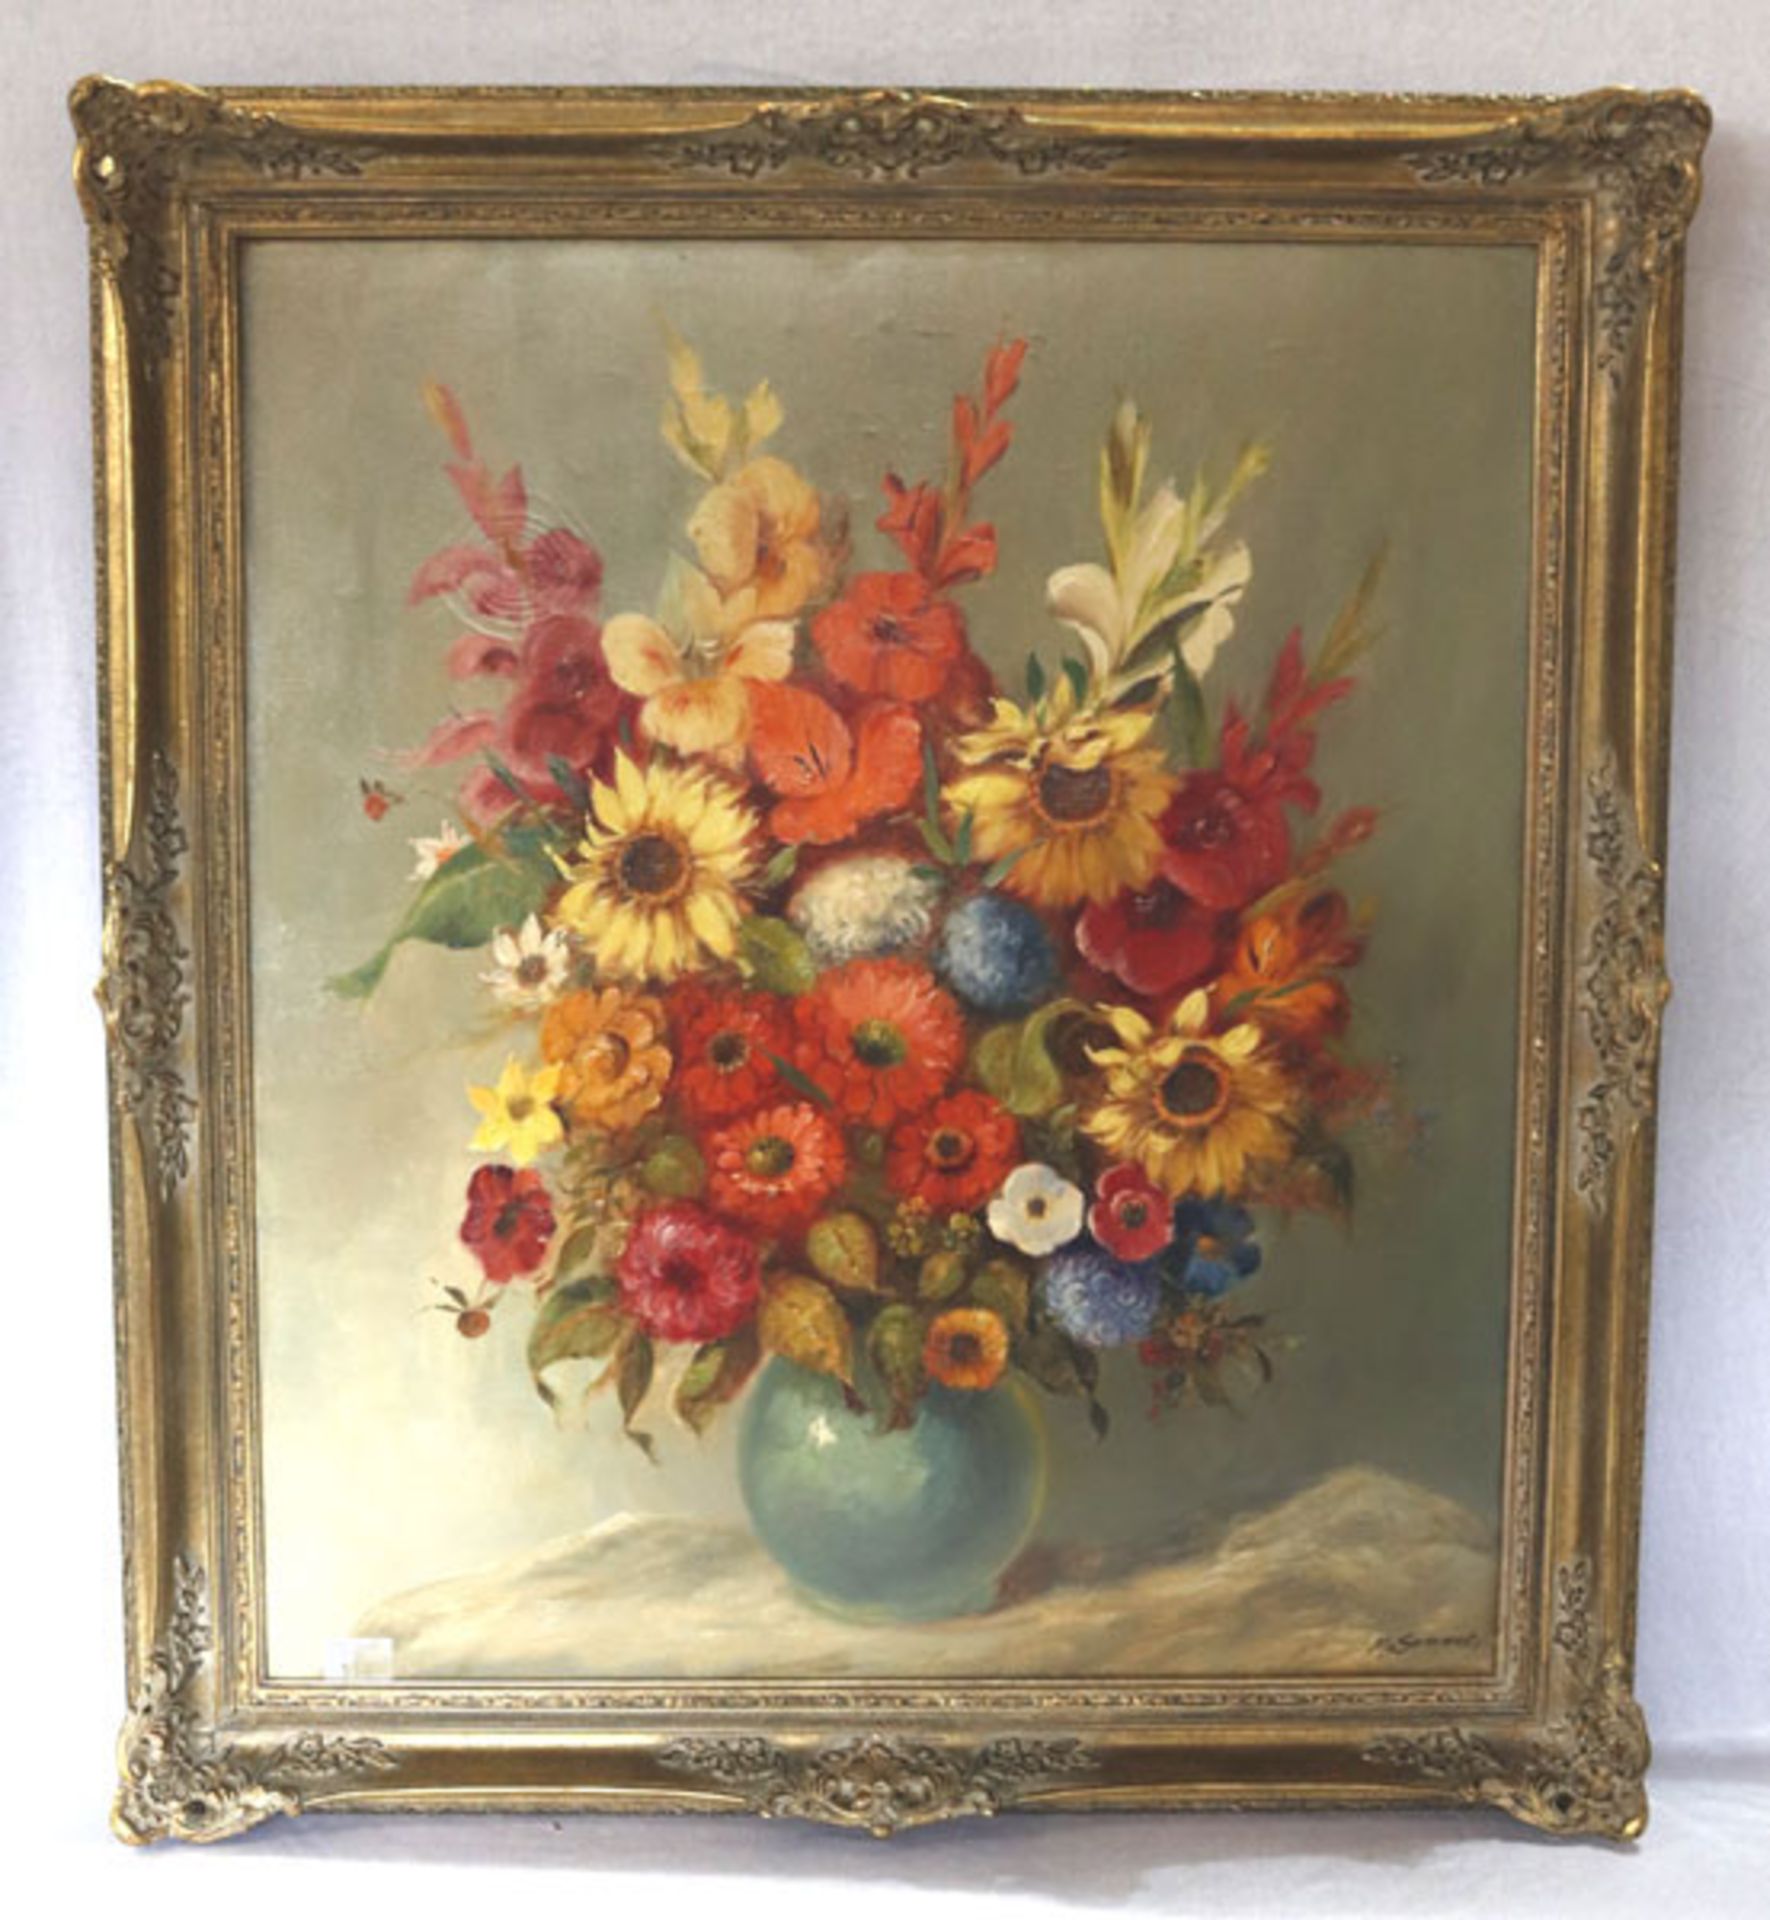 Gemälde ÖL/LW 'Sommerblumen in Vase'. signiert M. (Max) Sammet, akademischer Maler, * 2.9.1913 Rehau